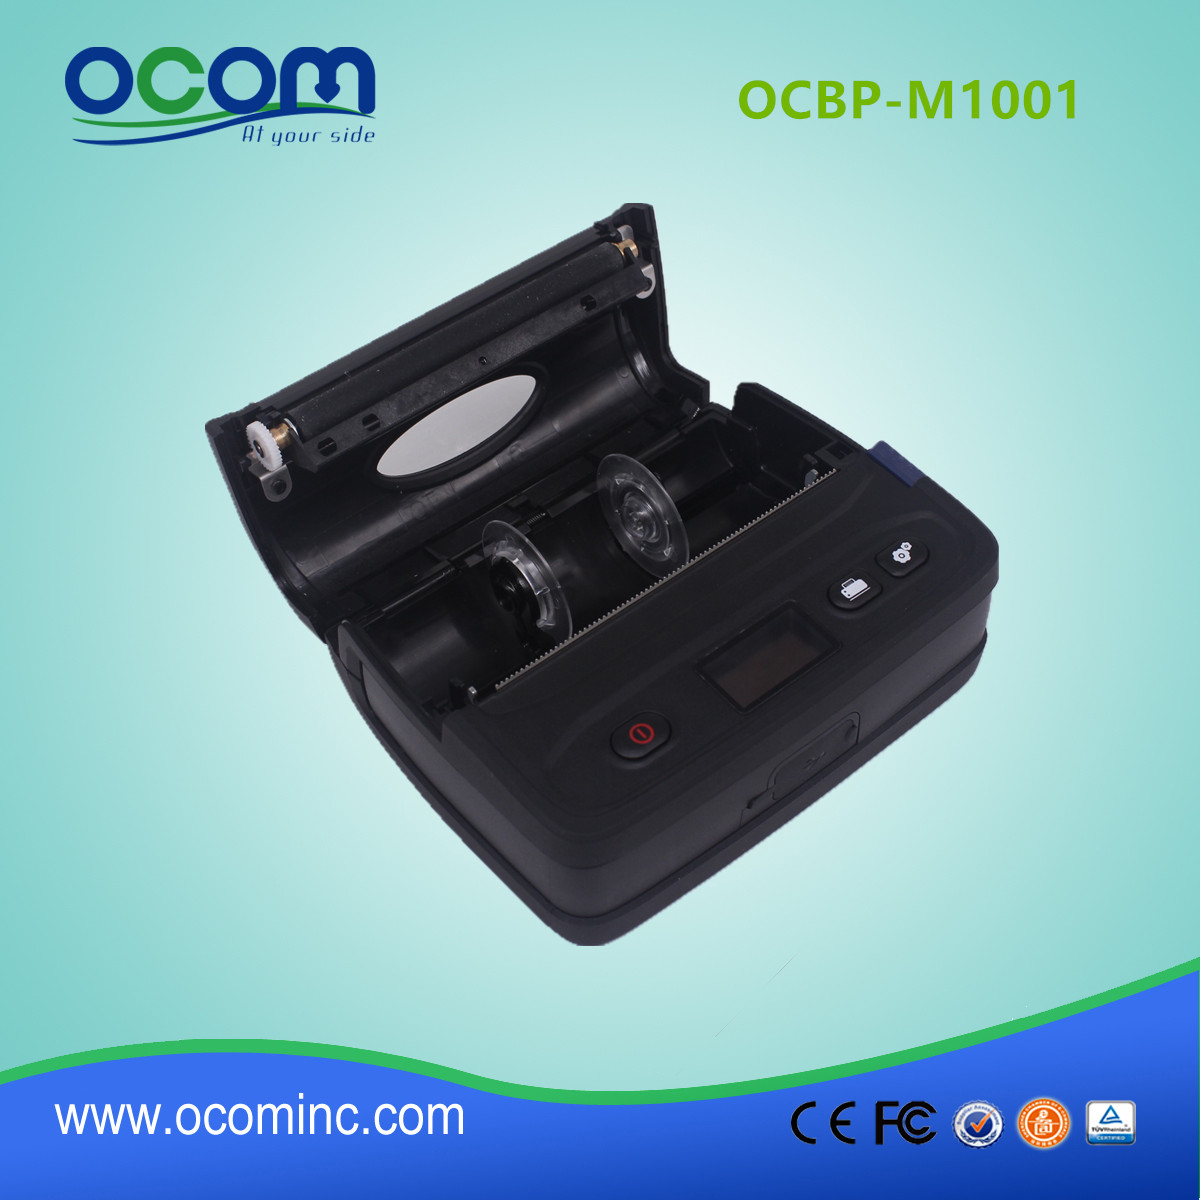 4 "Φορητό Bluetooth ετικέτα Θερμική barcode εκτυπωτή-OCBP-M1001